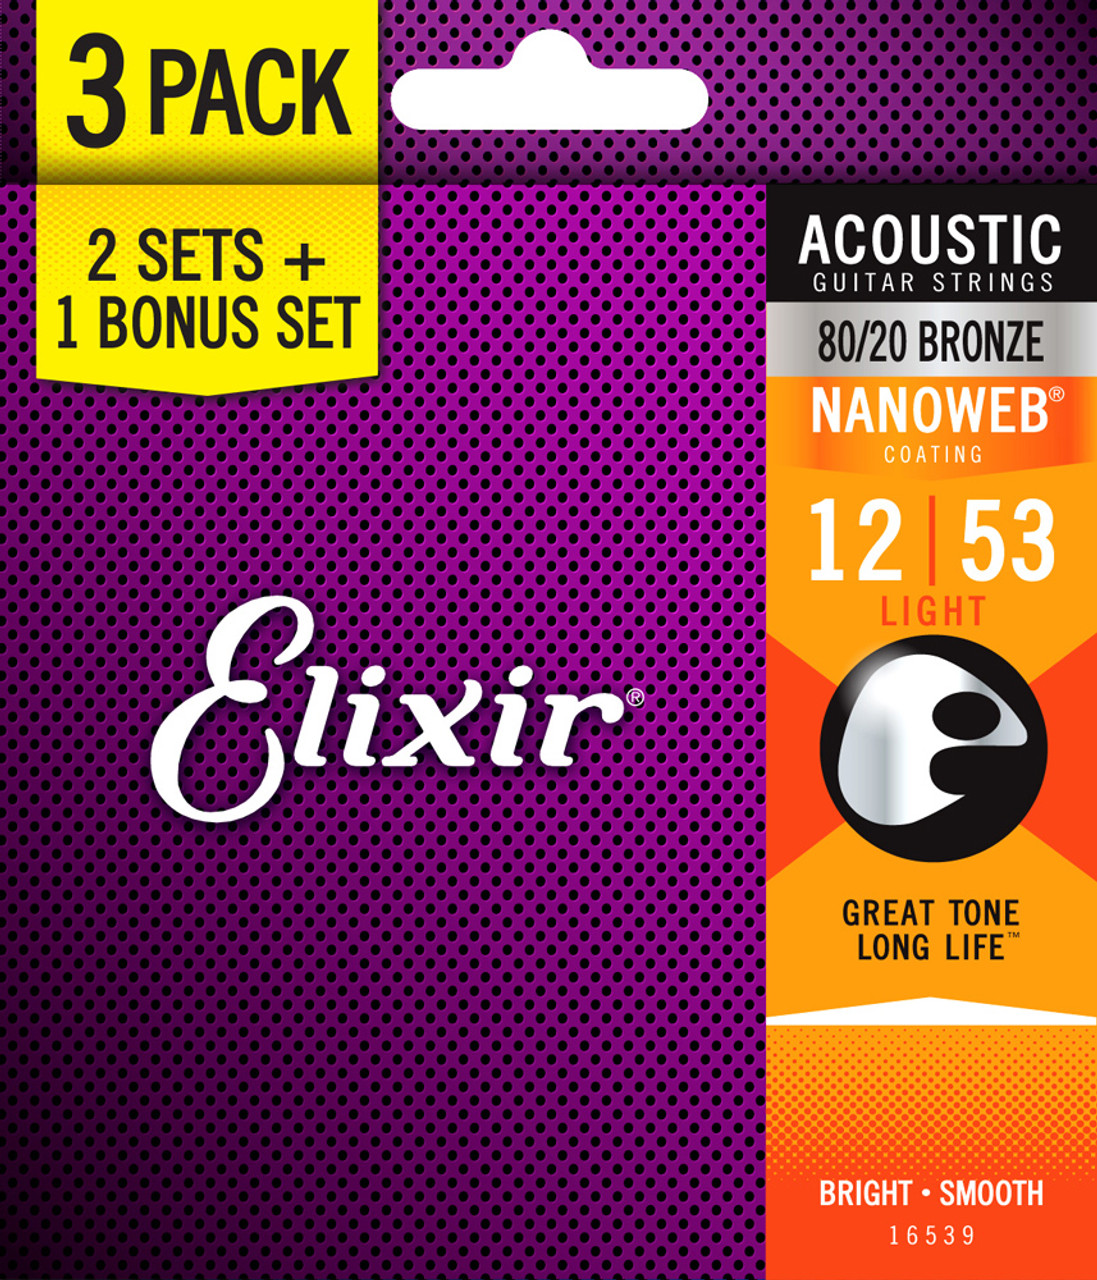 Elixir Nanoweb 80/20 Bronze Acoustic Guitar Strings Bonus Pack - 3 Sets for  the Price of 2! 16539 Light 12-53